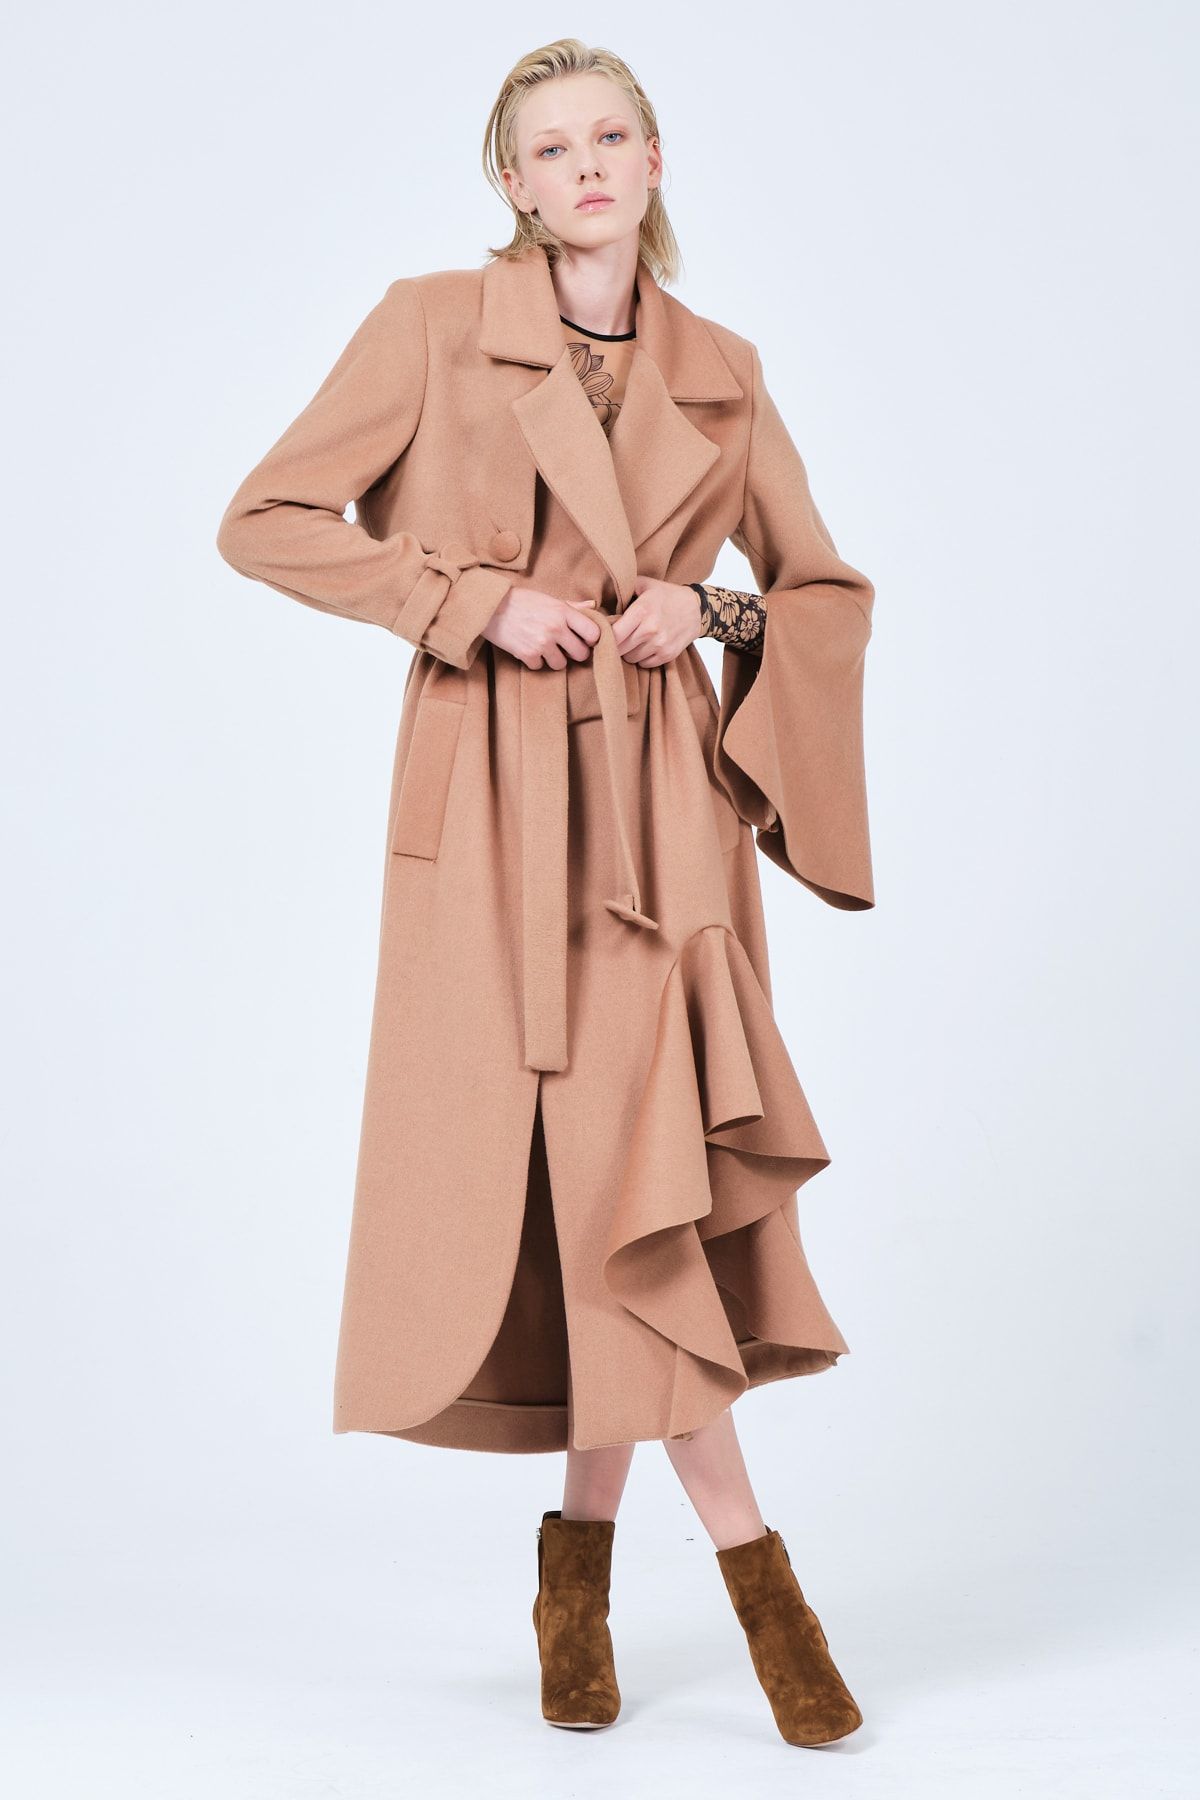 YOU YOUNG Kadın Fırfırlı Yırtmaçlı Elbise Palto Kol Ve Kemer Detaylı Camel Rengi - Nathalie Kaban Palto